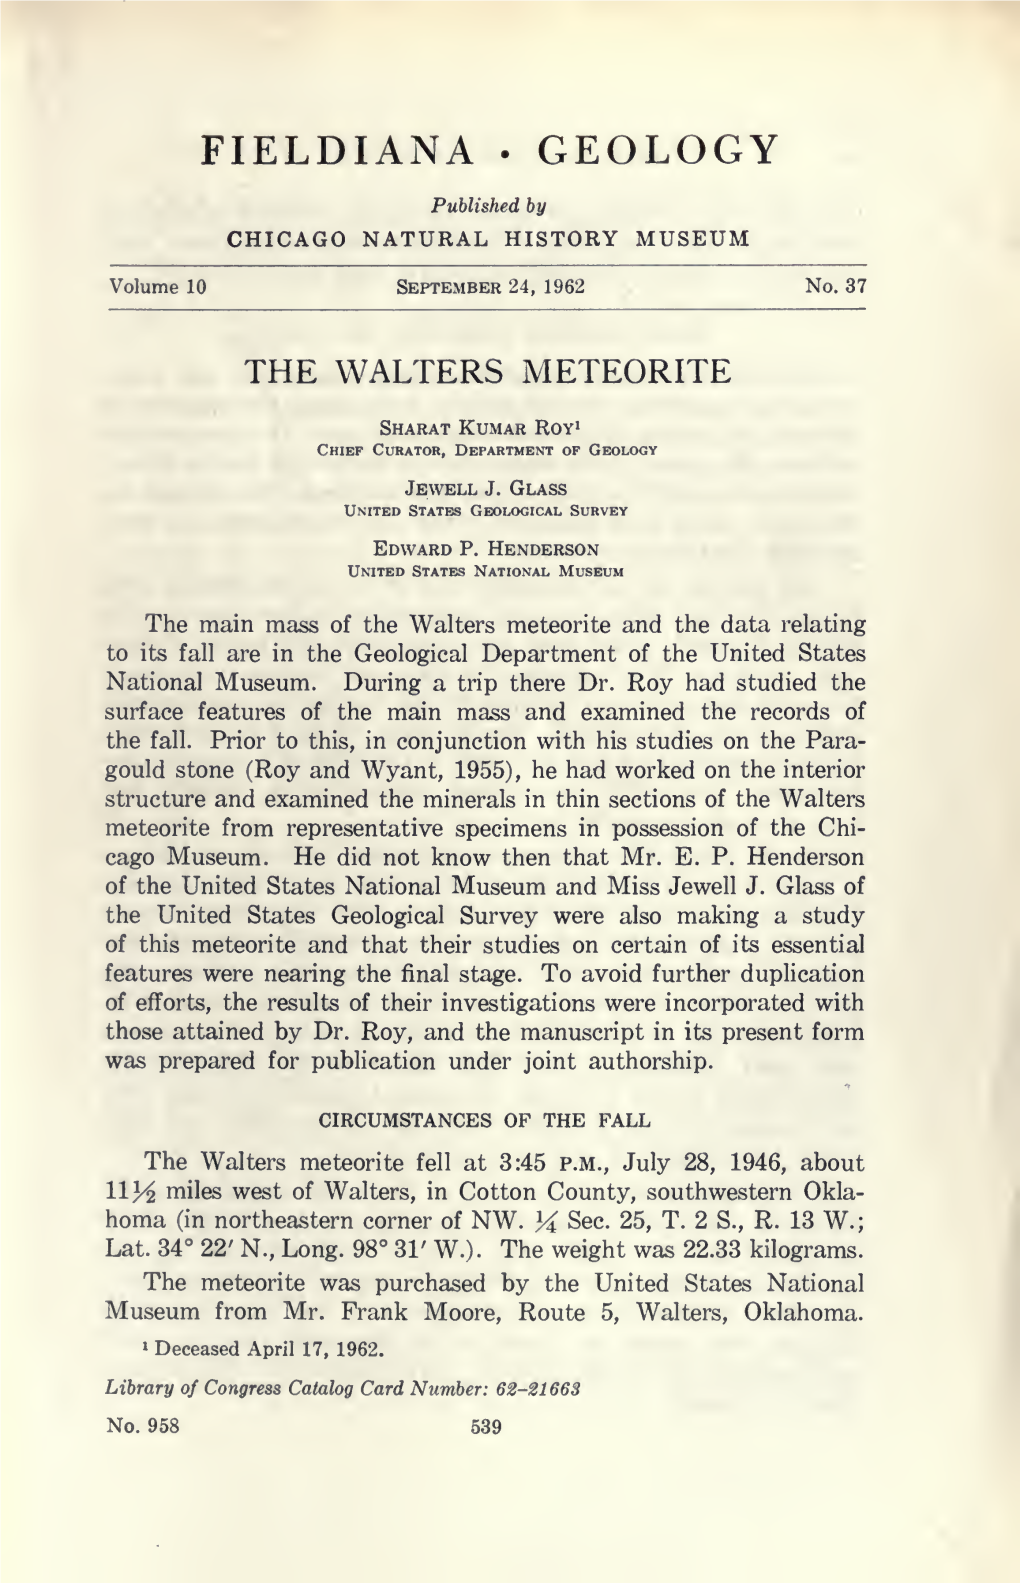 The Walters Meteorite